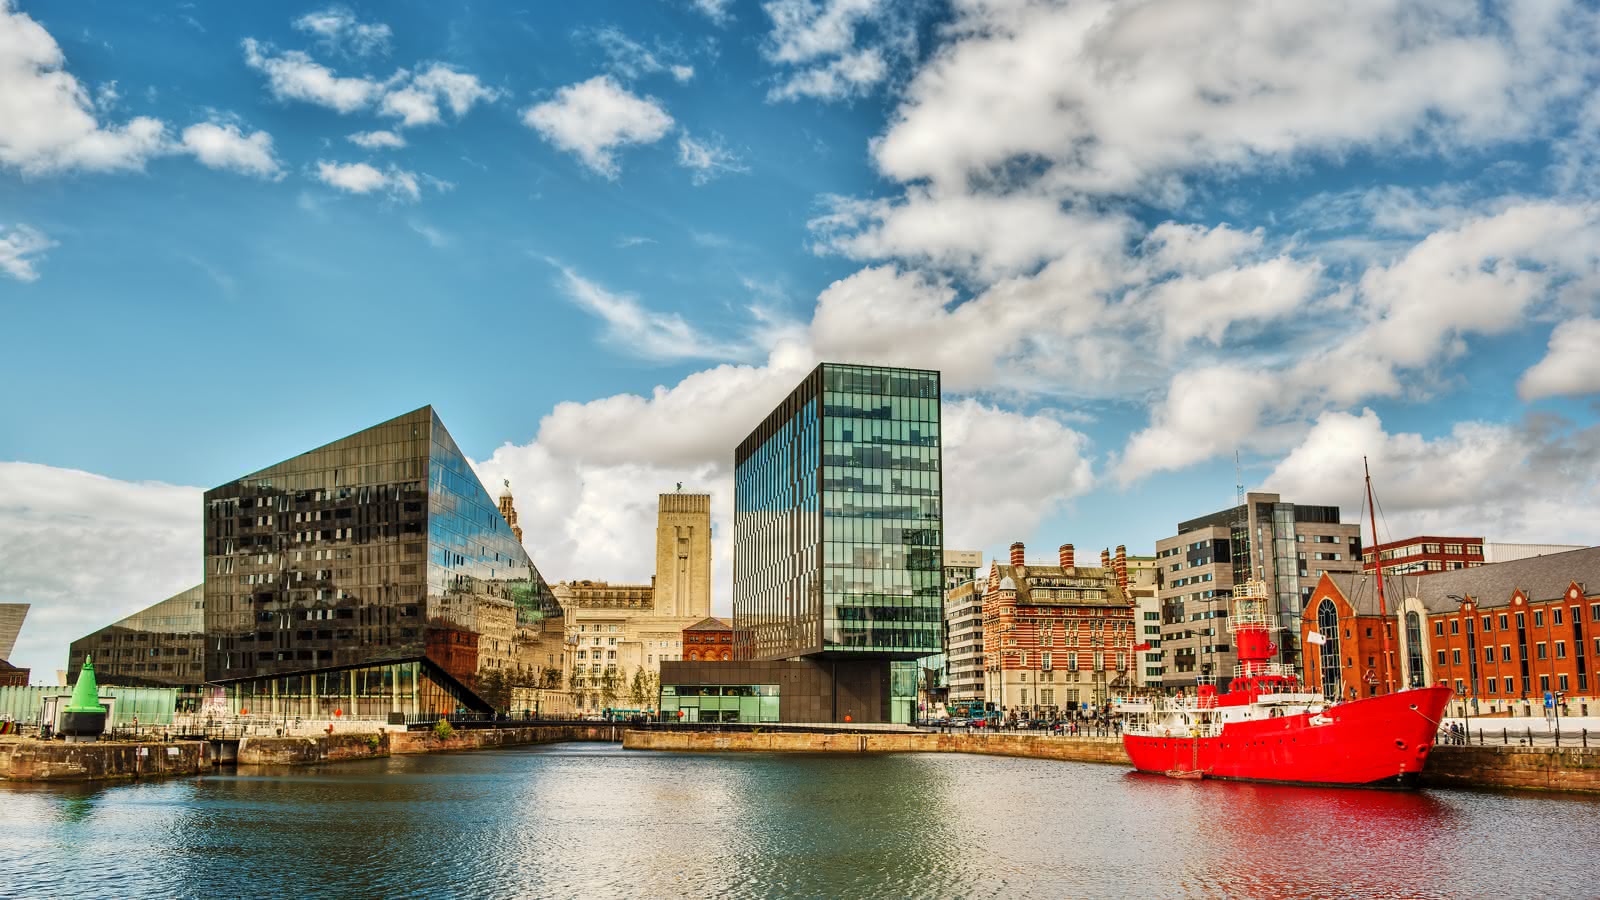 Du lịch Liverpool - thành phố cảng xinh đẹp của nước Anh